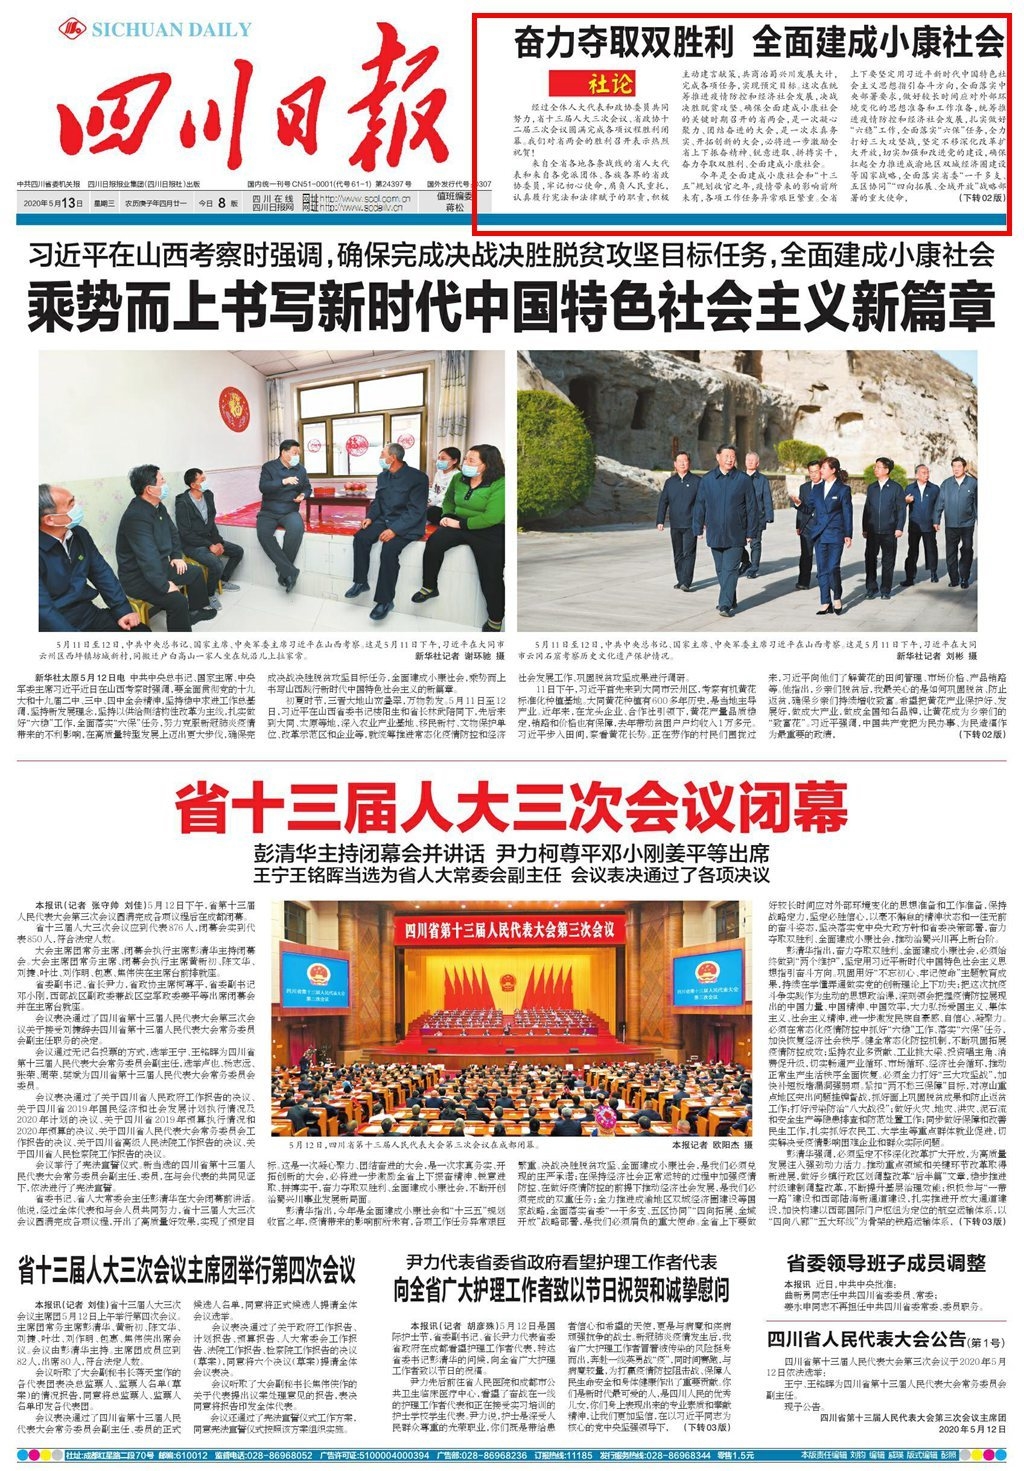 刊于5月13日四川日报头版的报眼位置